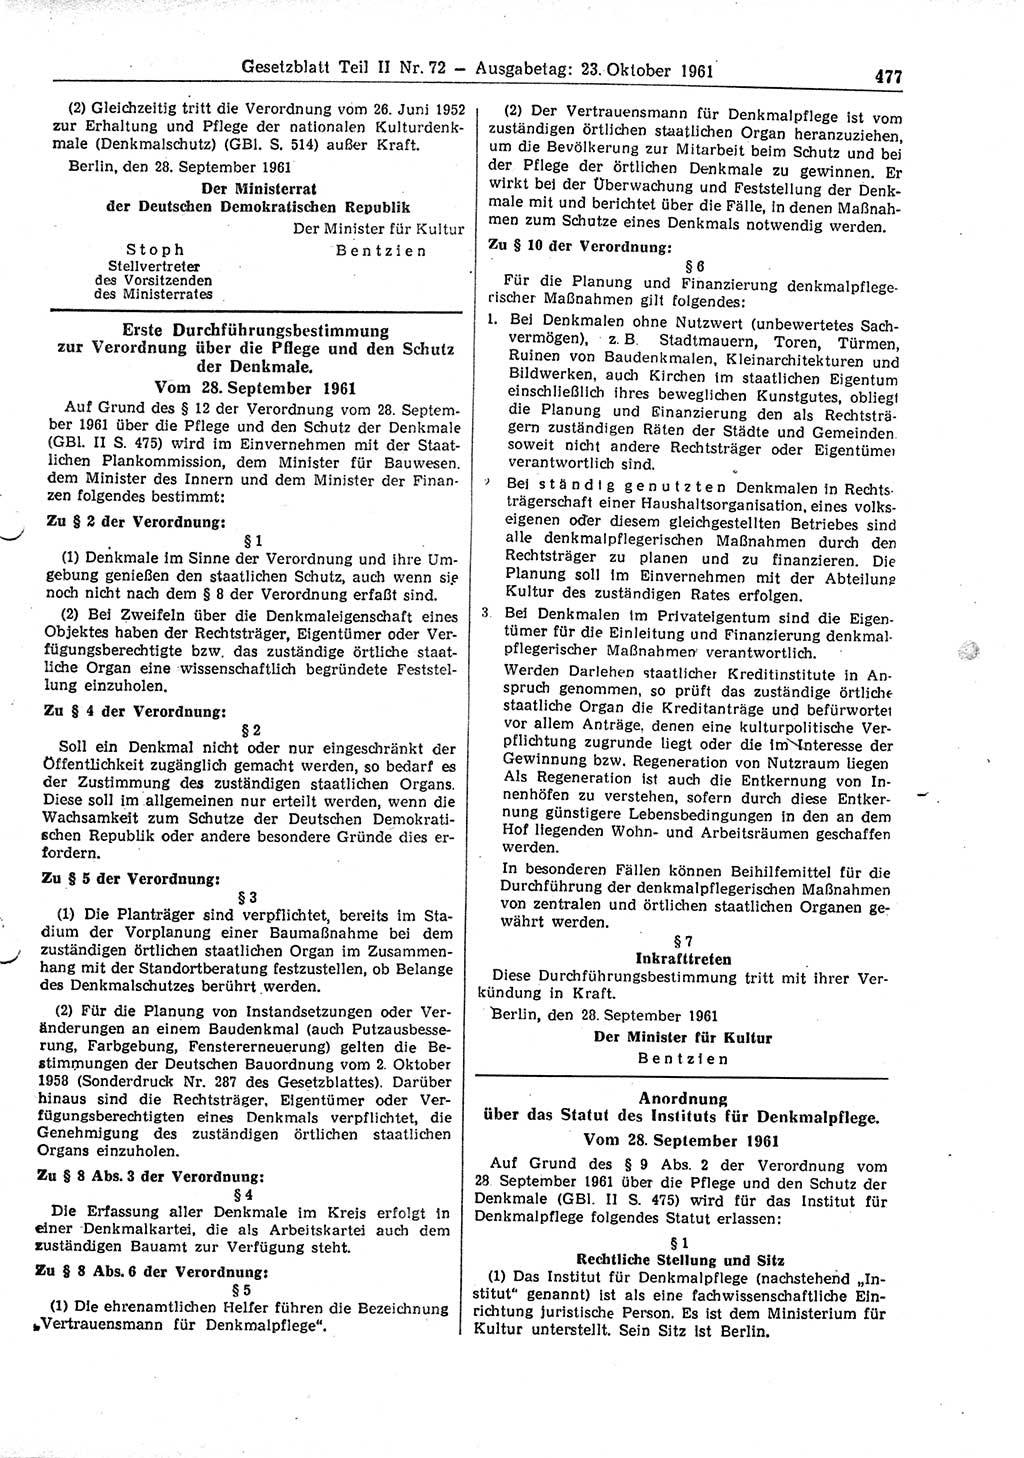 Gesetzblatt (GBl.) der Deutschen Demokratischen Republik (DDR) Teil ⅠⅠ 1961, Seite 477 (GBl. DDR ⅠⅠ 1961, S. 477)